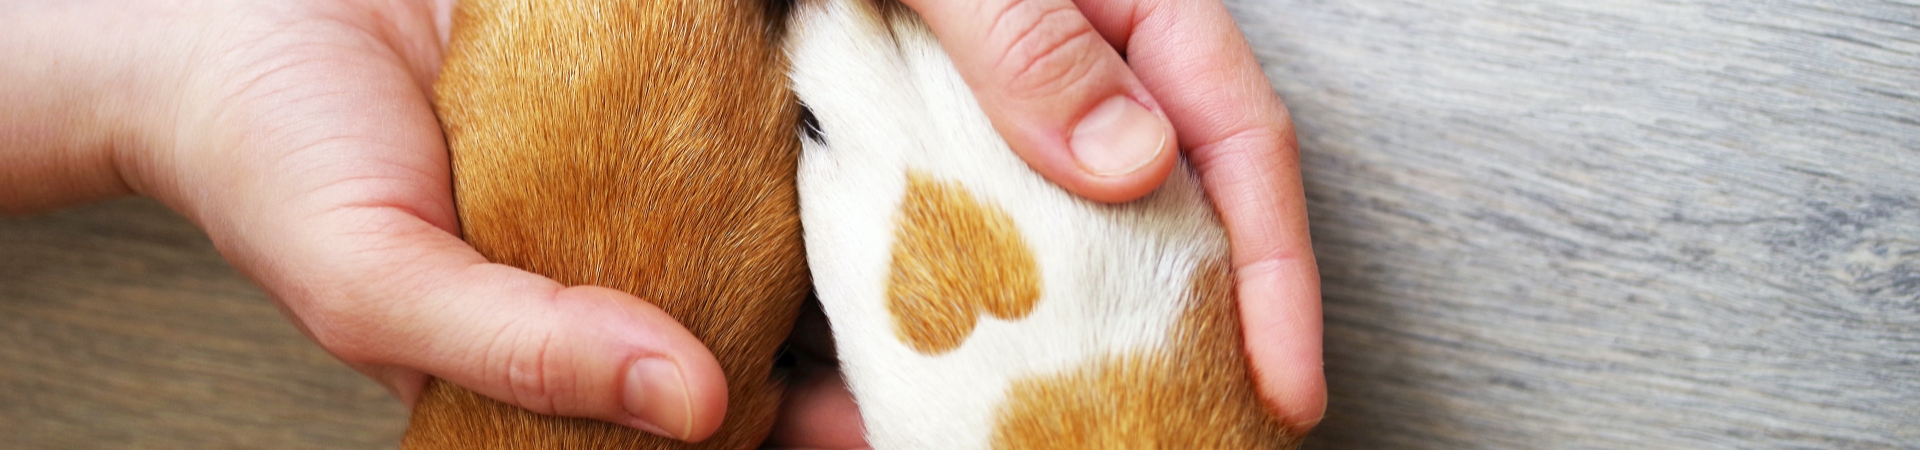 Person hält 2 Hundepfoten in den Händen, Fellzeichnung auf Pfote schaut aus wie ein Herz